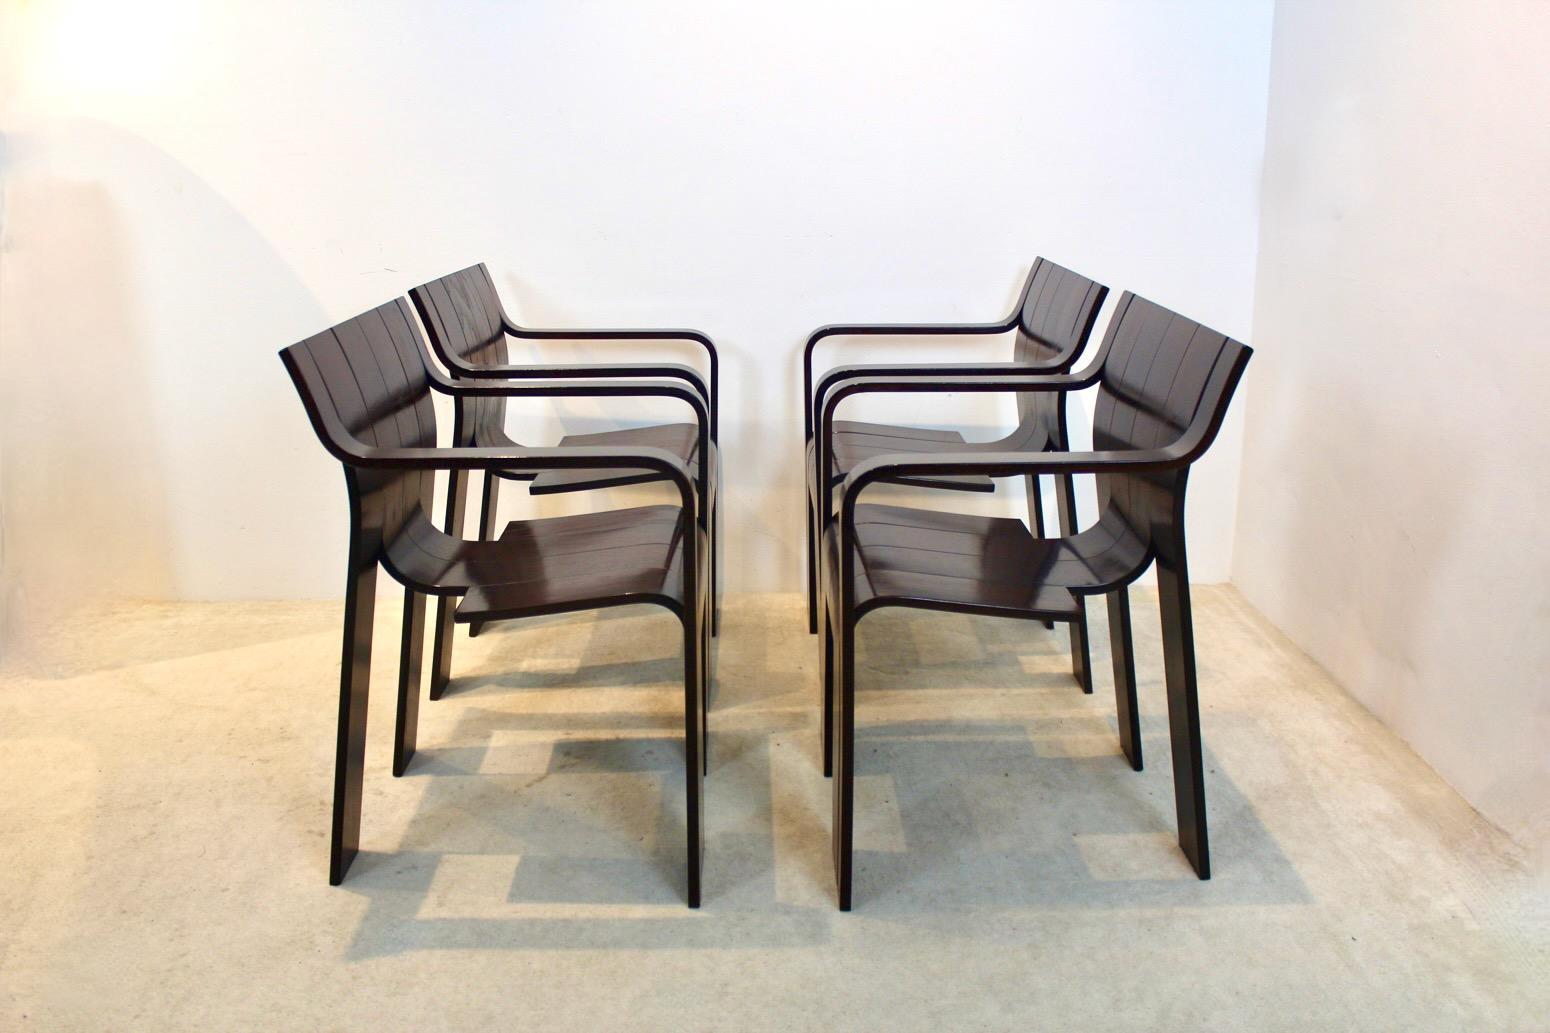 Très rare ensemble de chaises de salle à manger 'Strip' avec accoudoirs, conçues en 1974 par Gijs Bakker pour Castelijn aux Pays-Bas (marquées). Seul un nombre limité de ces chaises ont été fabriquées avec des accoudoirs. Ce design inventif se